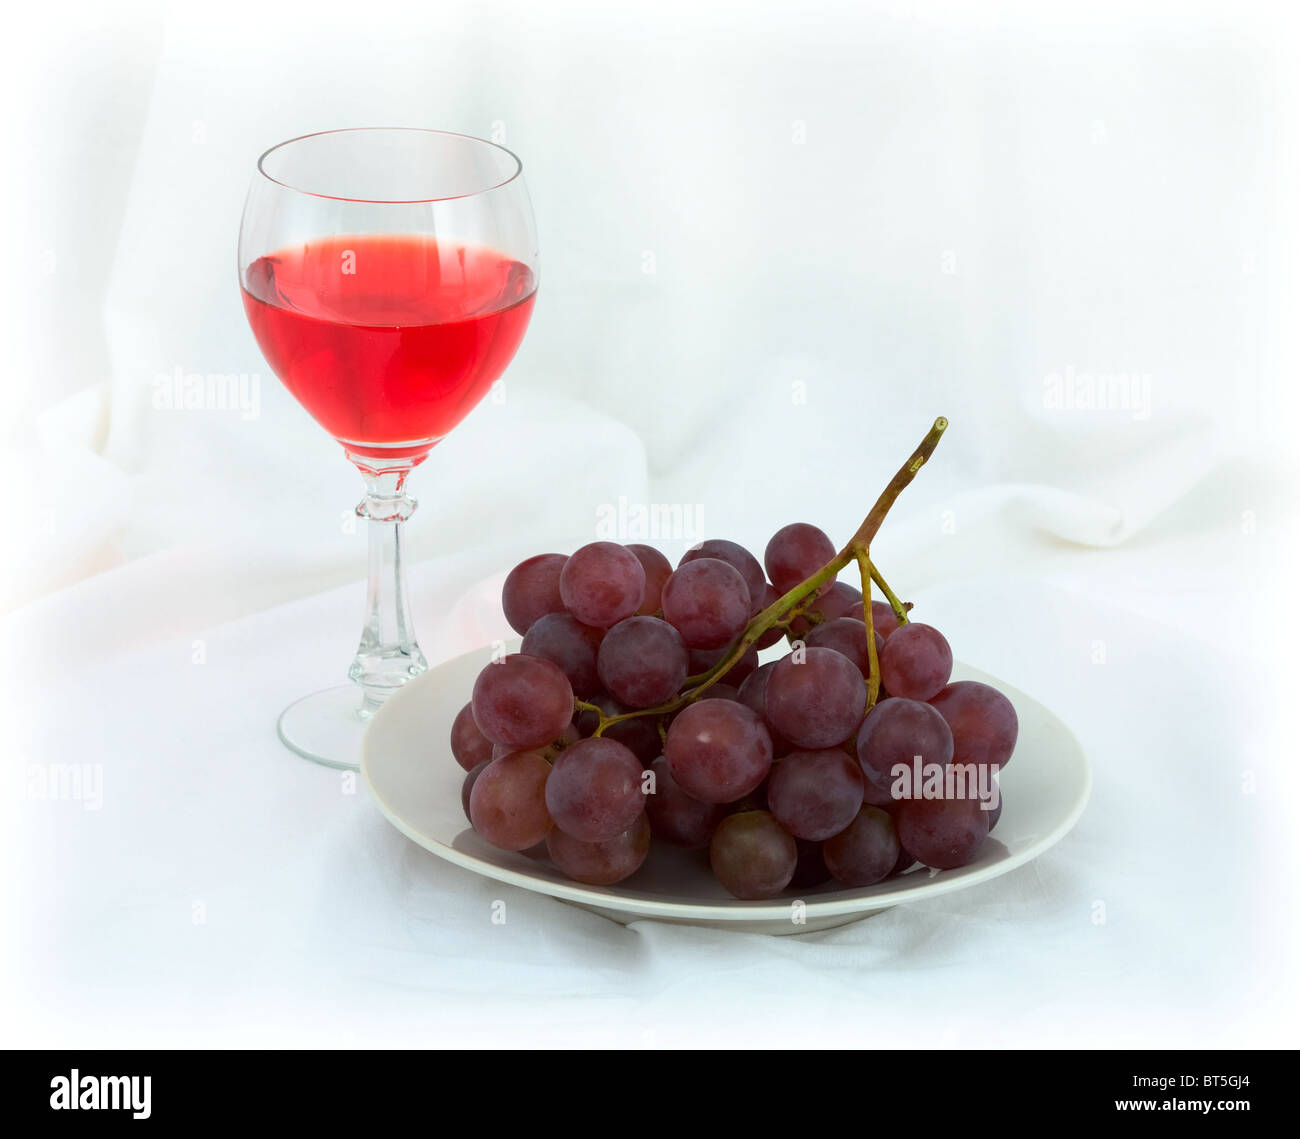 Materiale dell'uva immagini e fotografie stock ad alta risoluzione - Alamy